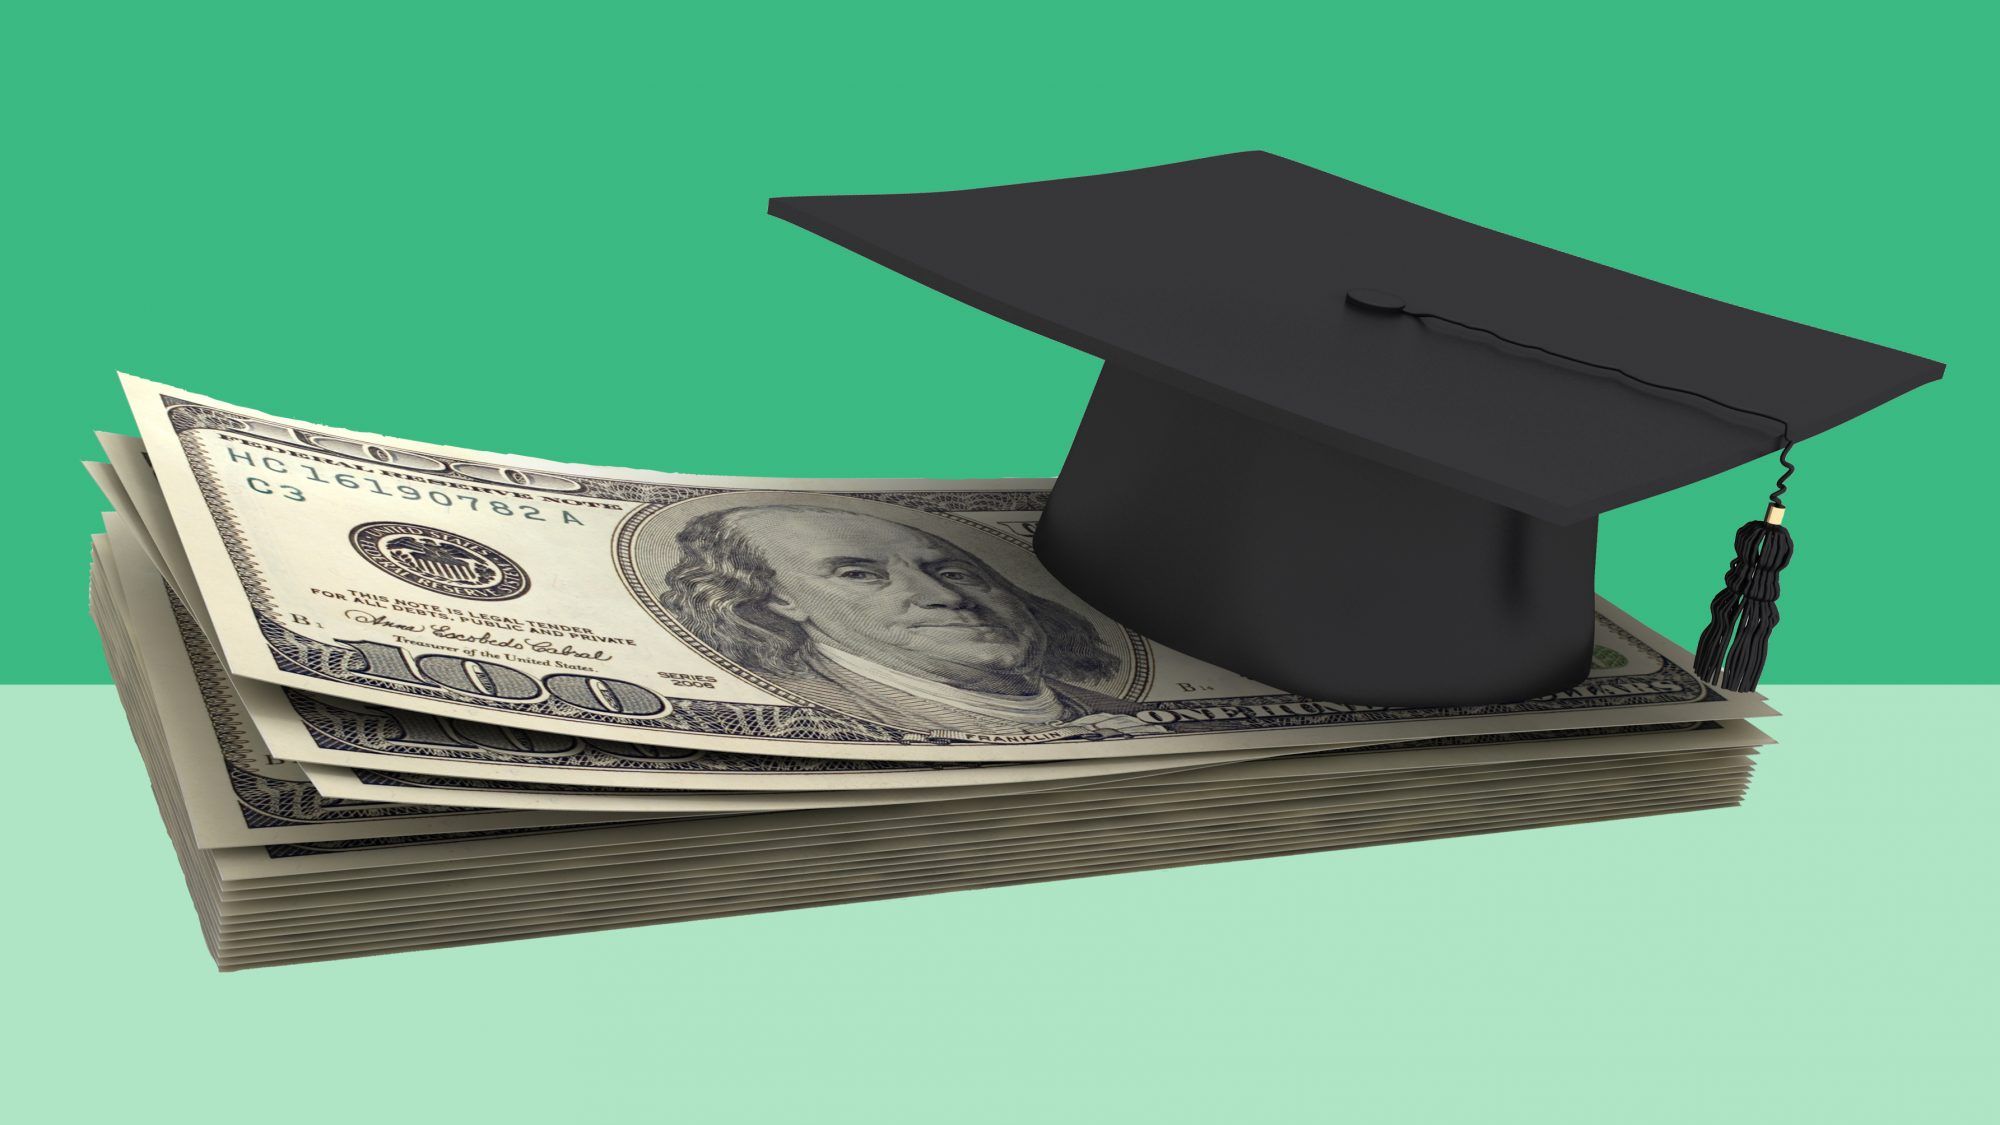 Üniversite için Ödeme Yapmak için 8 Akıllı İpucu